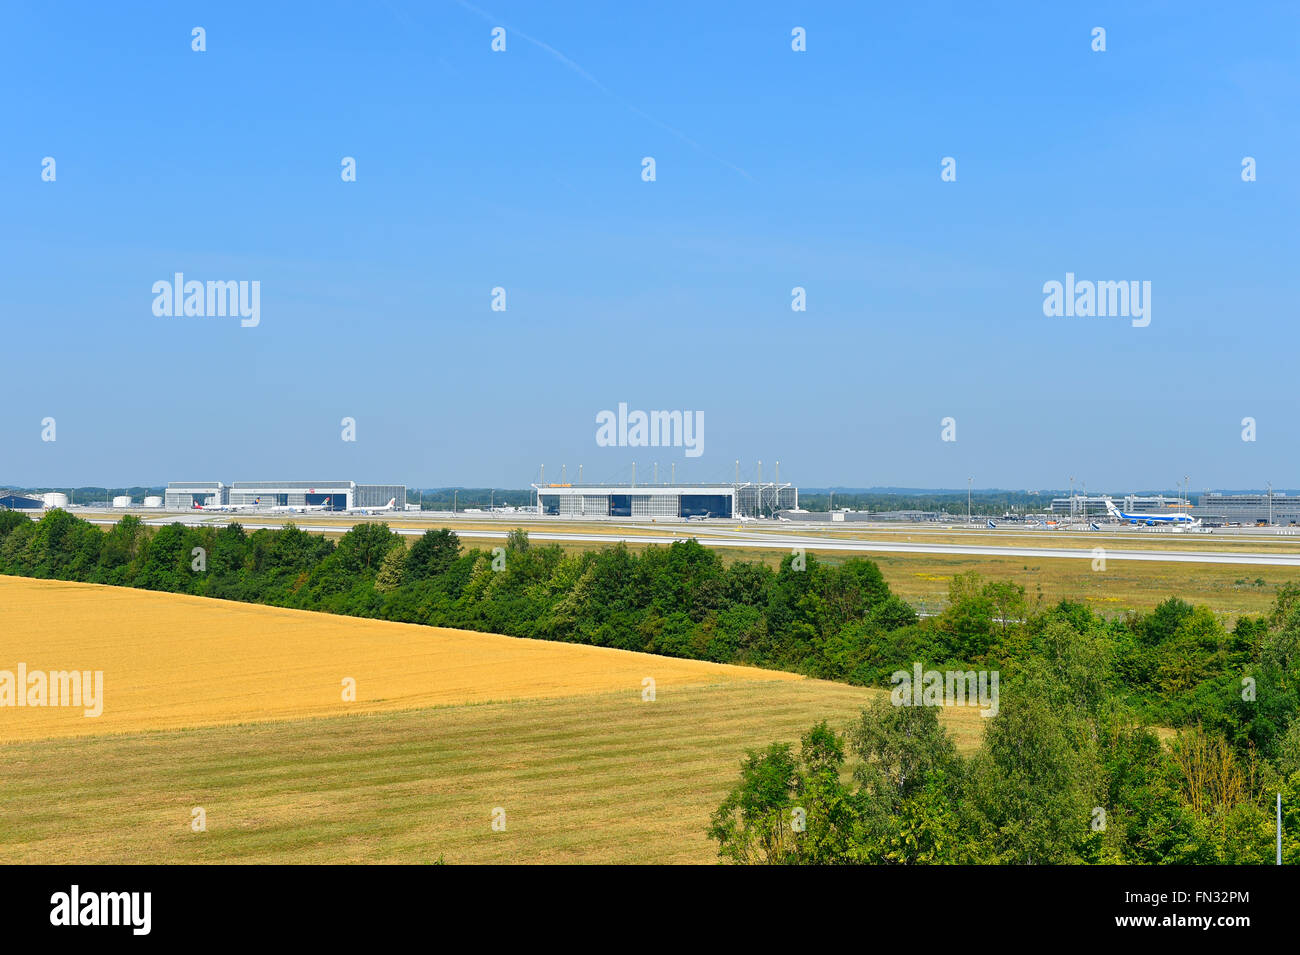 El aeropuerto de Munich, descripción, panorama, ver, hangar, pista, al sur, el aeropuerto de Munich, MUC, DEMS, el aeropuerto de Munich, Erding, Freising, Foto de stock